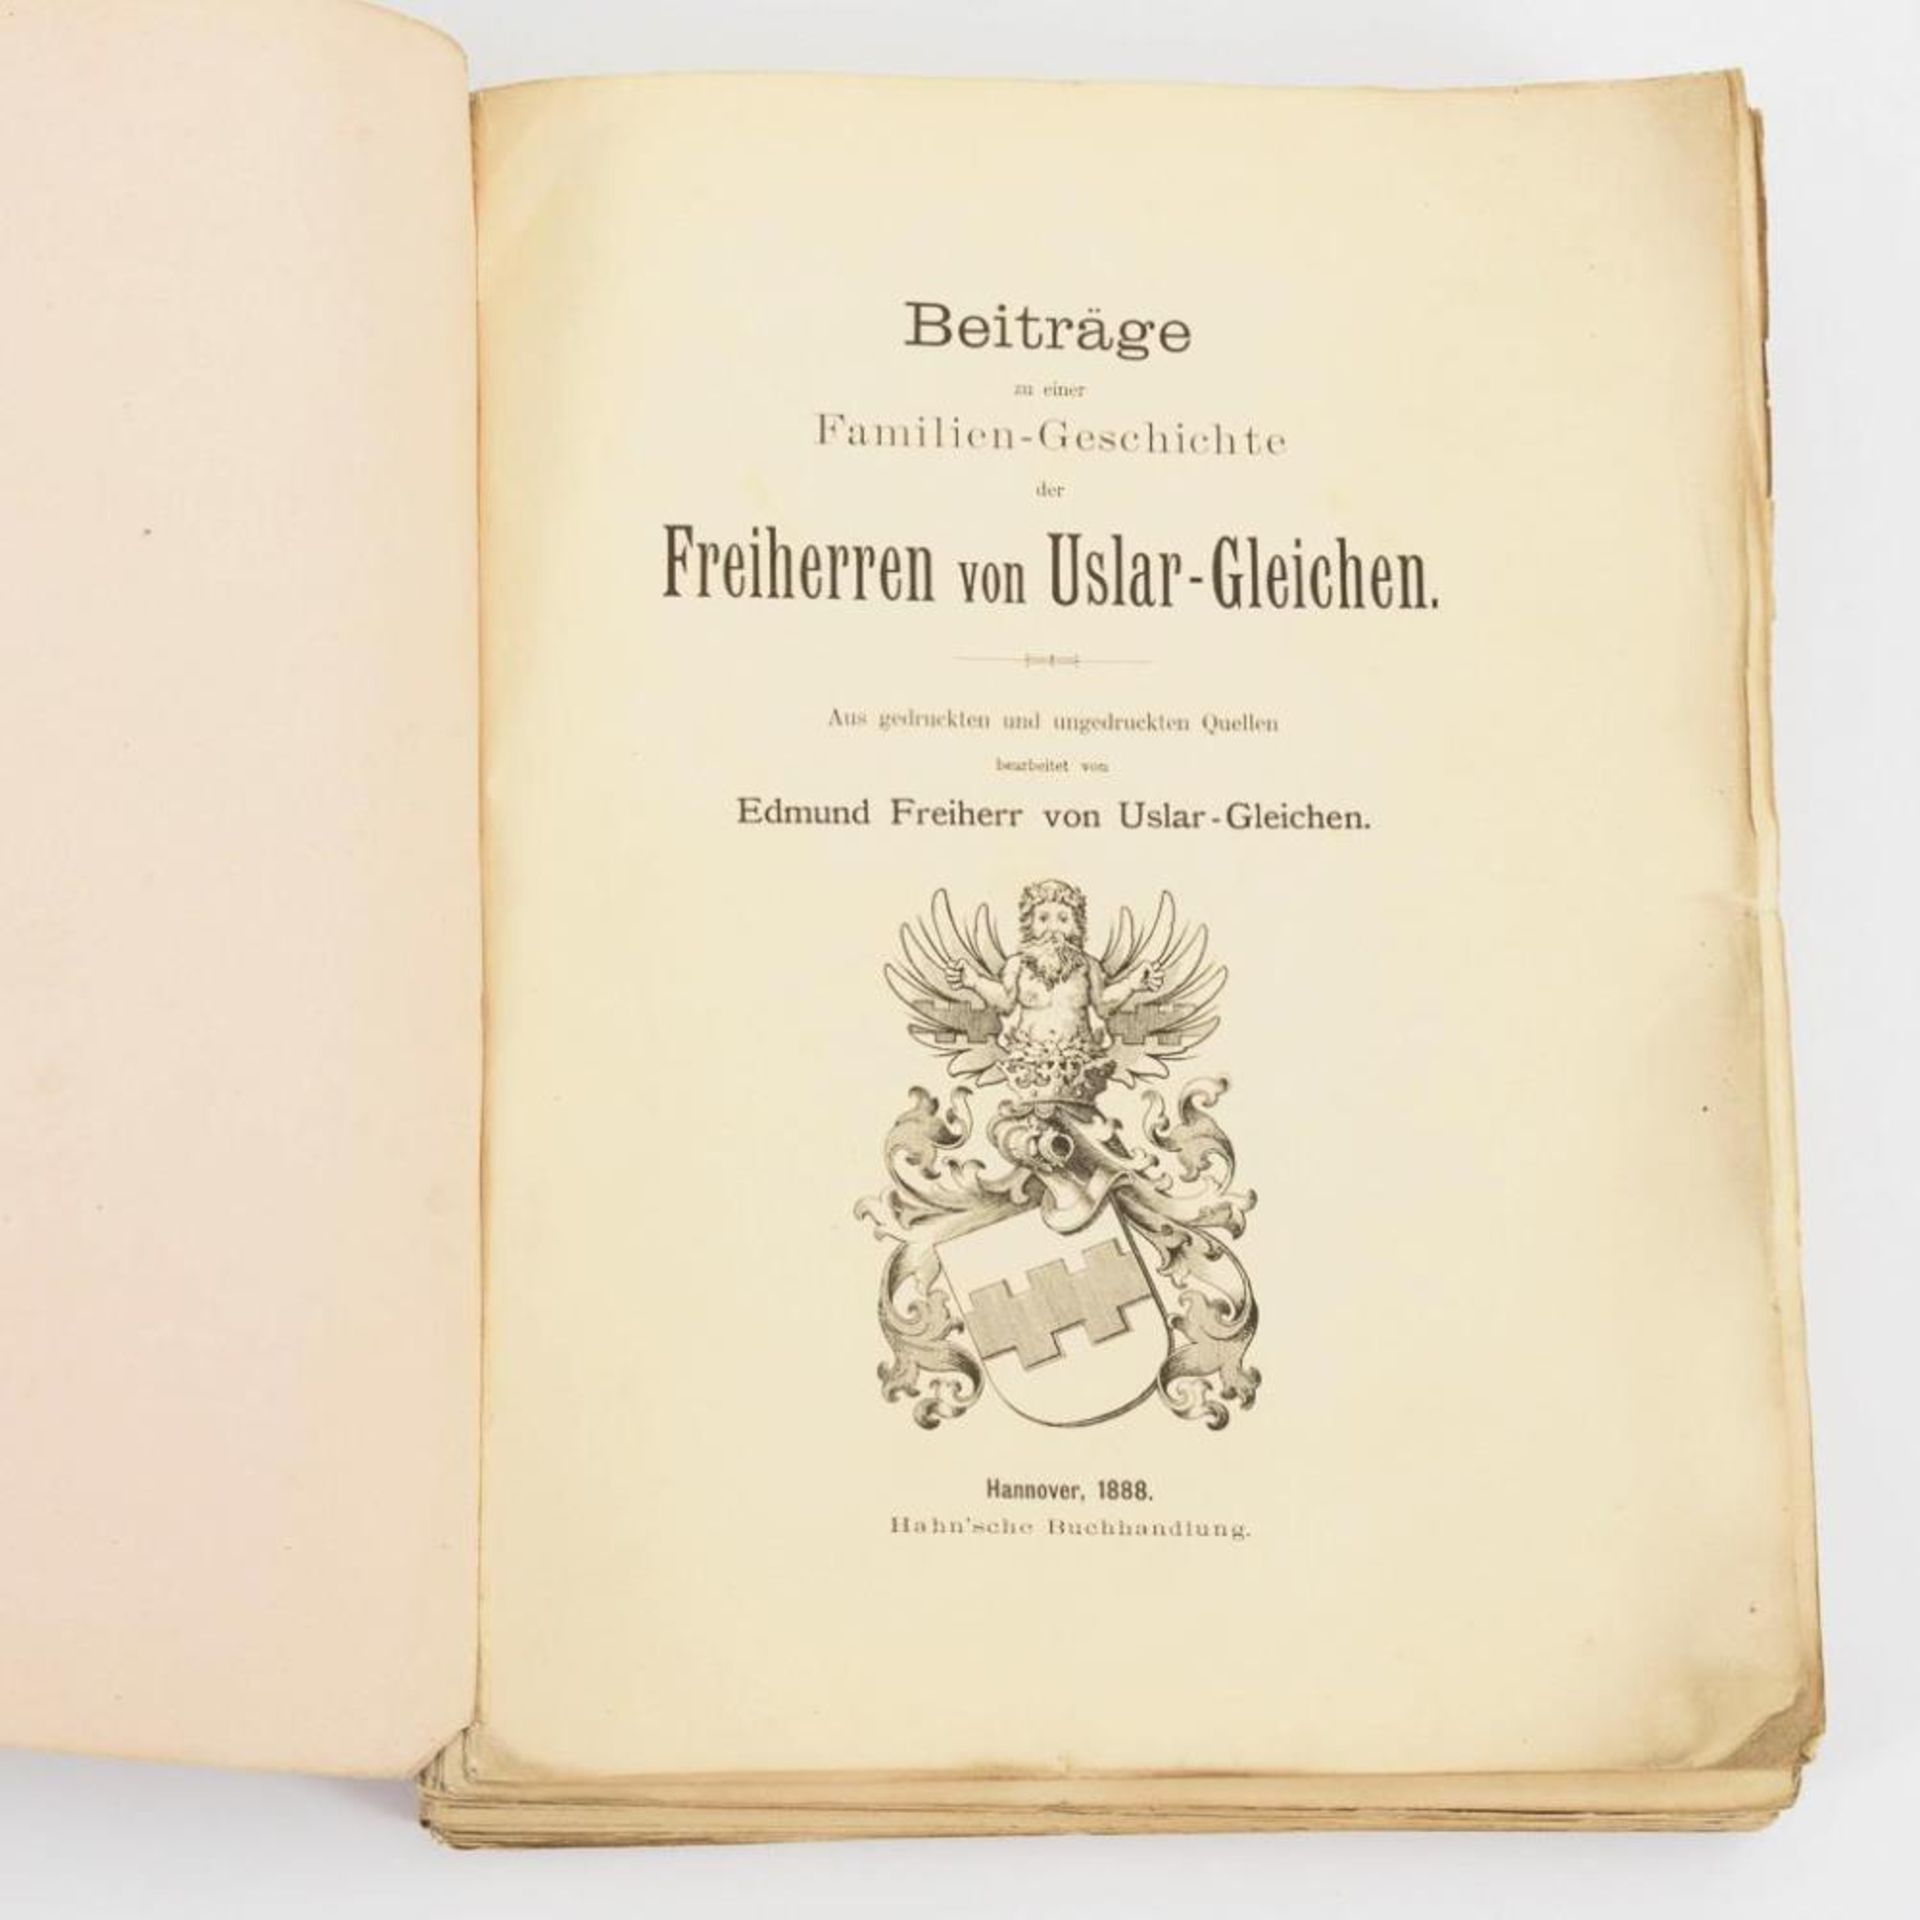 VON USLAR-GLEICHEN, Edmund Freiherr. "Beiträge Familiengeschichte Uslar-Gleichen".